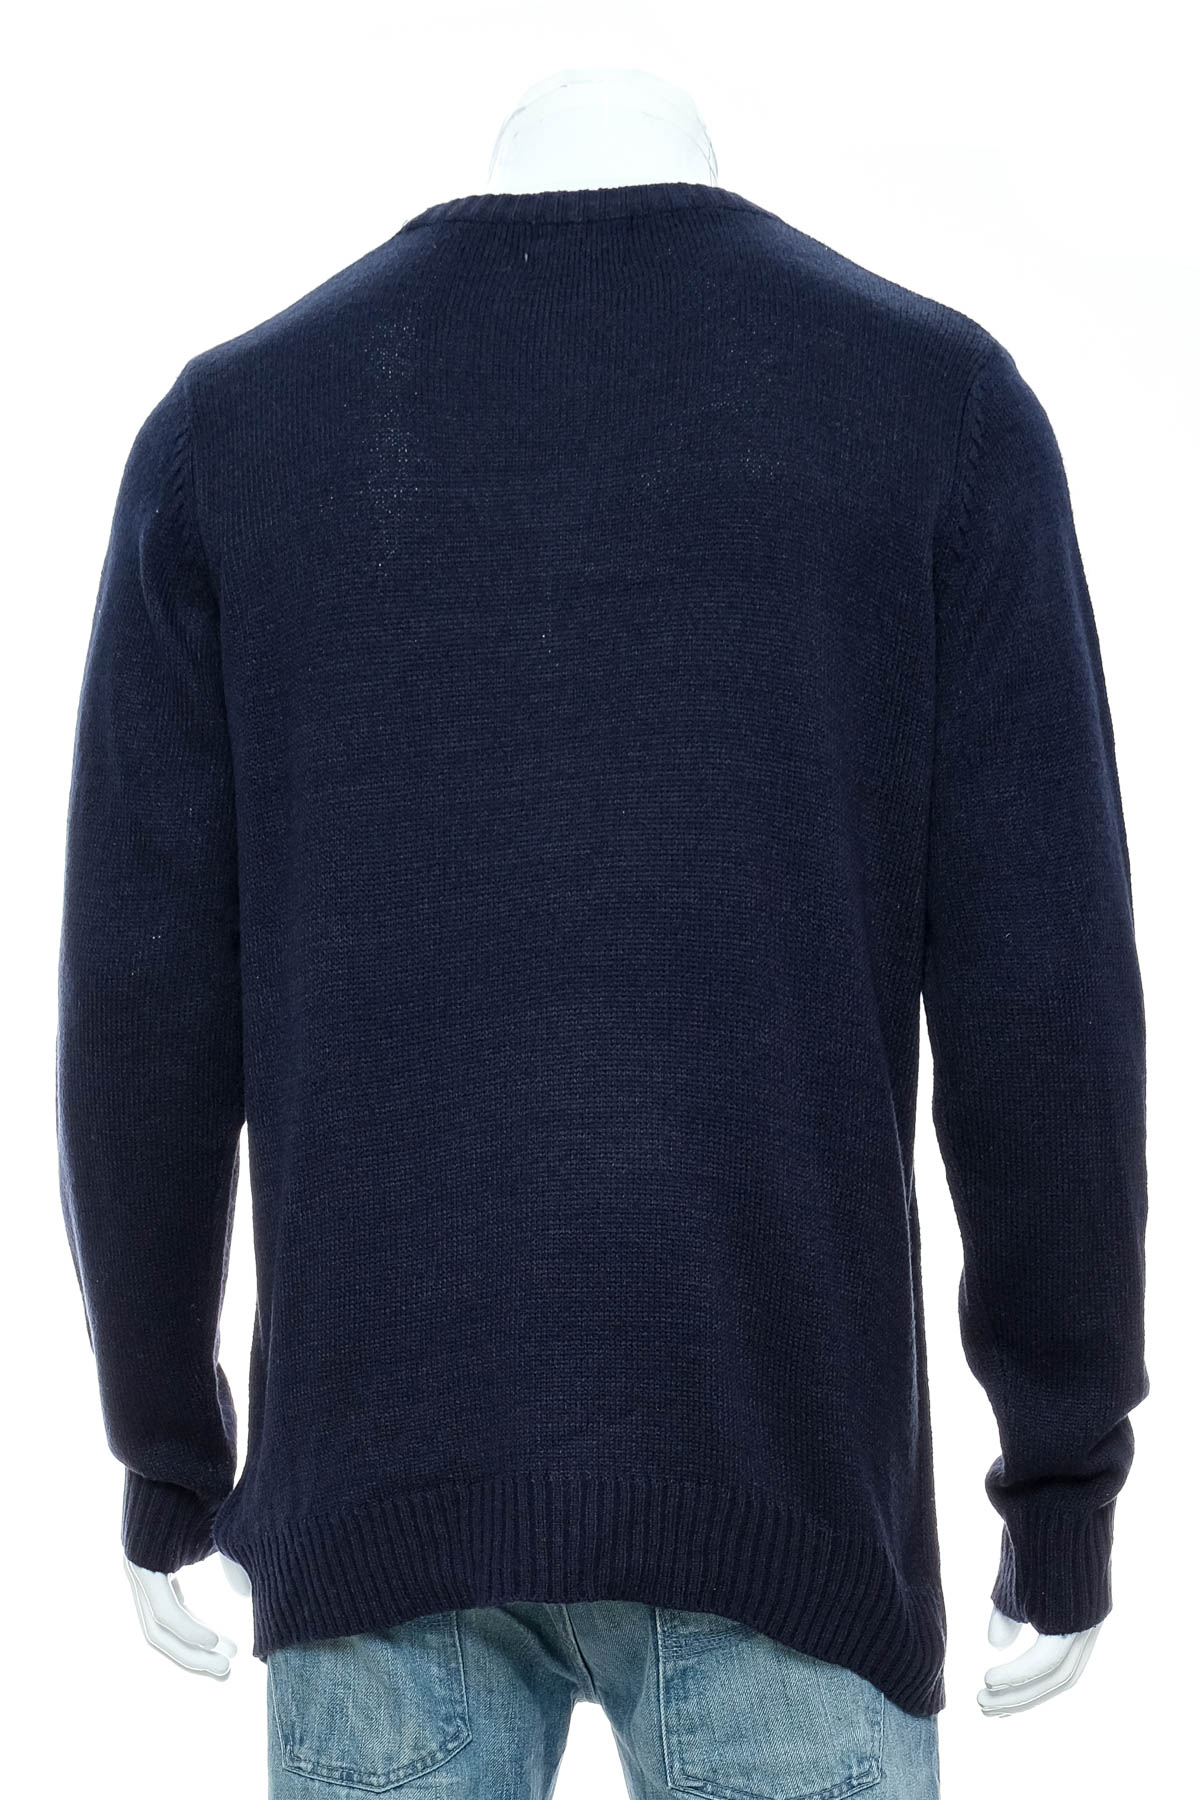 Men's sweater - Briatore - 1